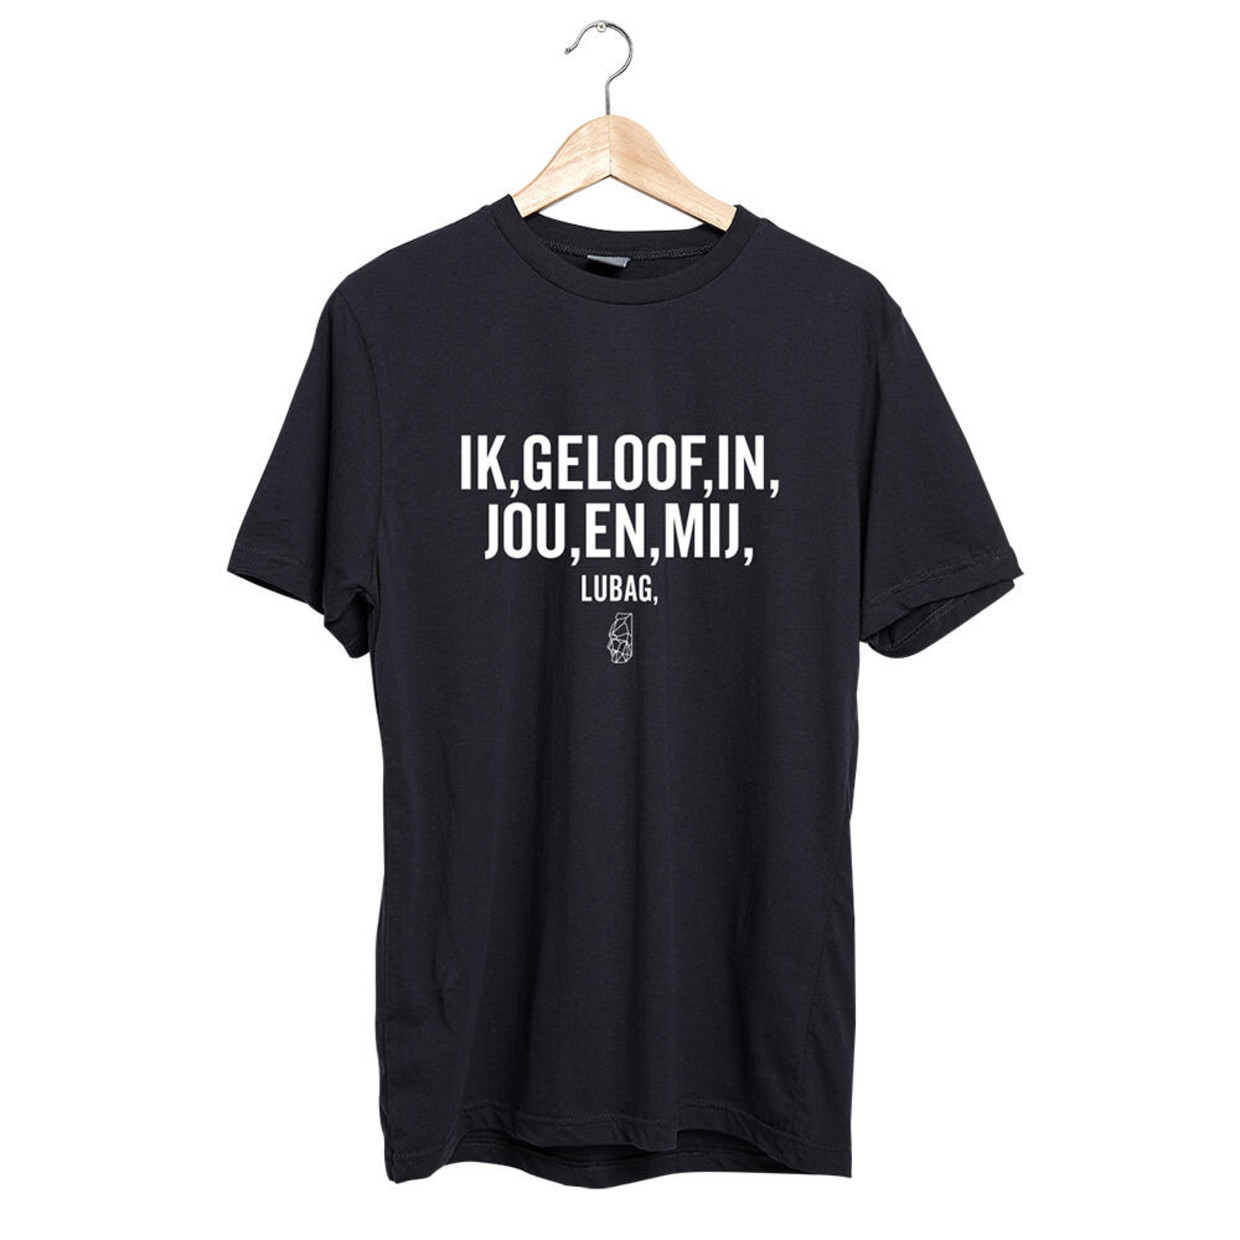 Het eigen T-shirt dat Zondag met Lubach presenteerde met de opdruk ‘ik,geloof,in jou,en,mij’ – met komma’s in plaats van punten zoals bij Rumag – waarvan wél de gehele opbrengst naar het Rode Kruis gaat. Beeld 